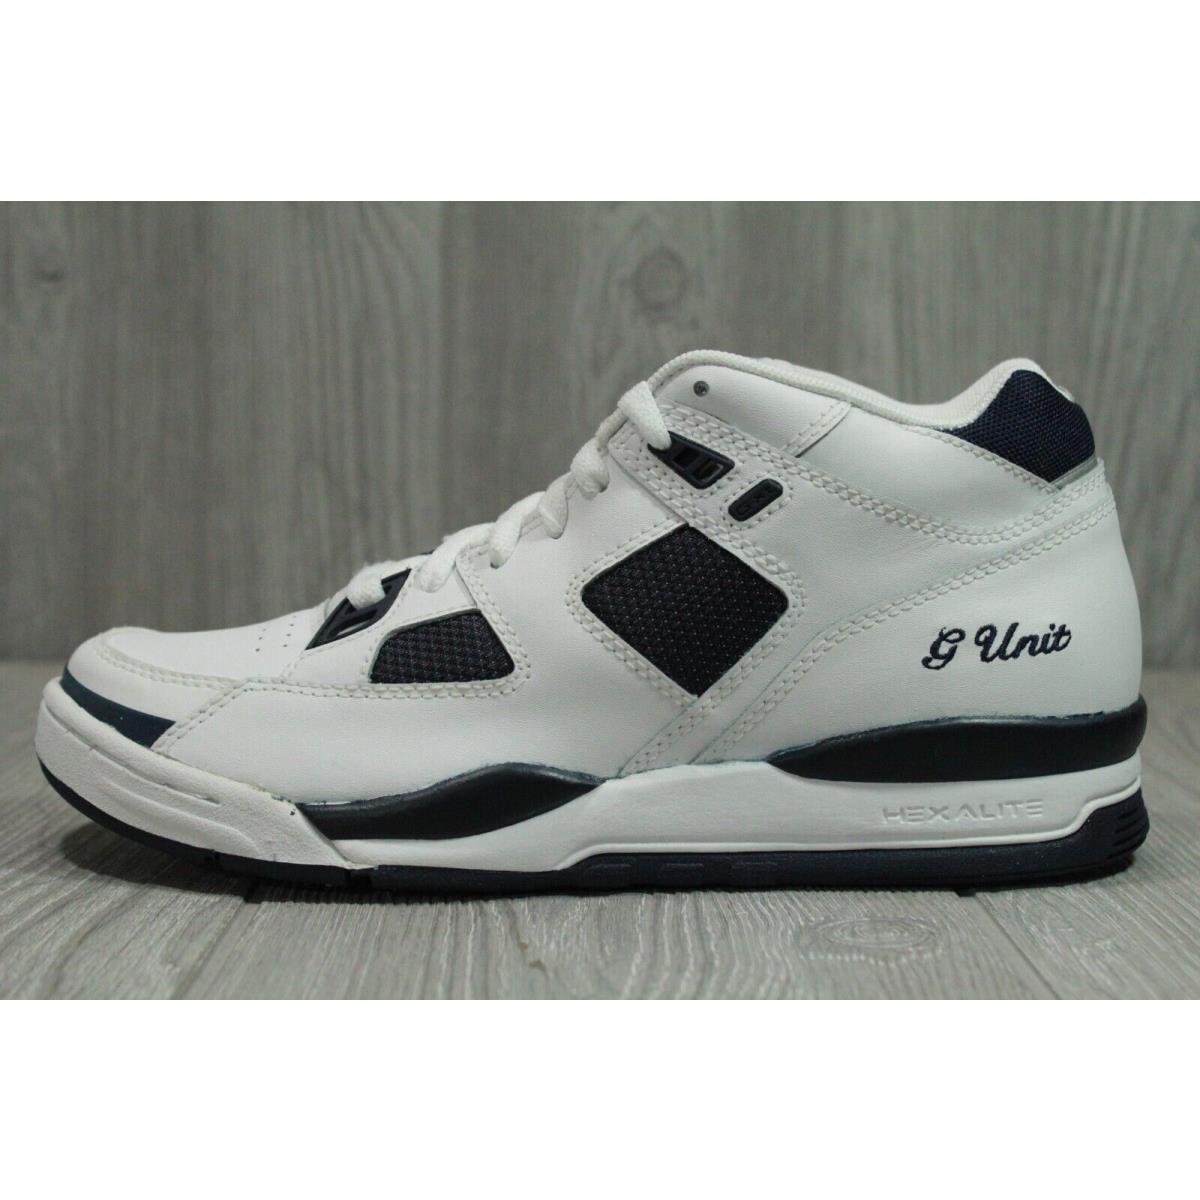 Vintage Reebok G Unit G XT White Navy Shoes 2004 Men Wmns 7 Oss | 047436767510 - Reebok shoes - White SporTipTop